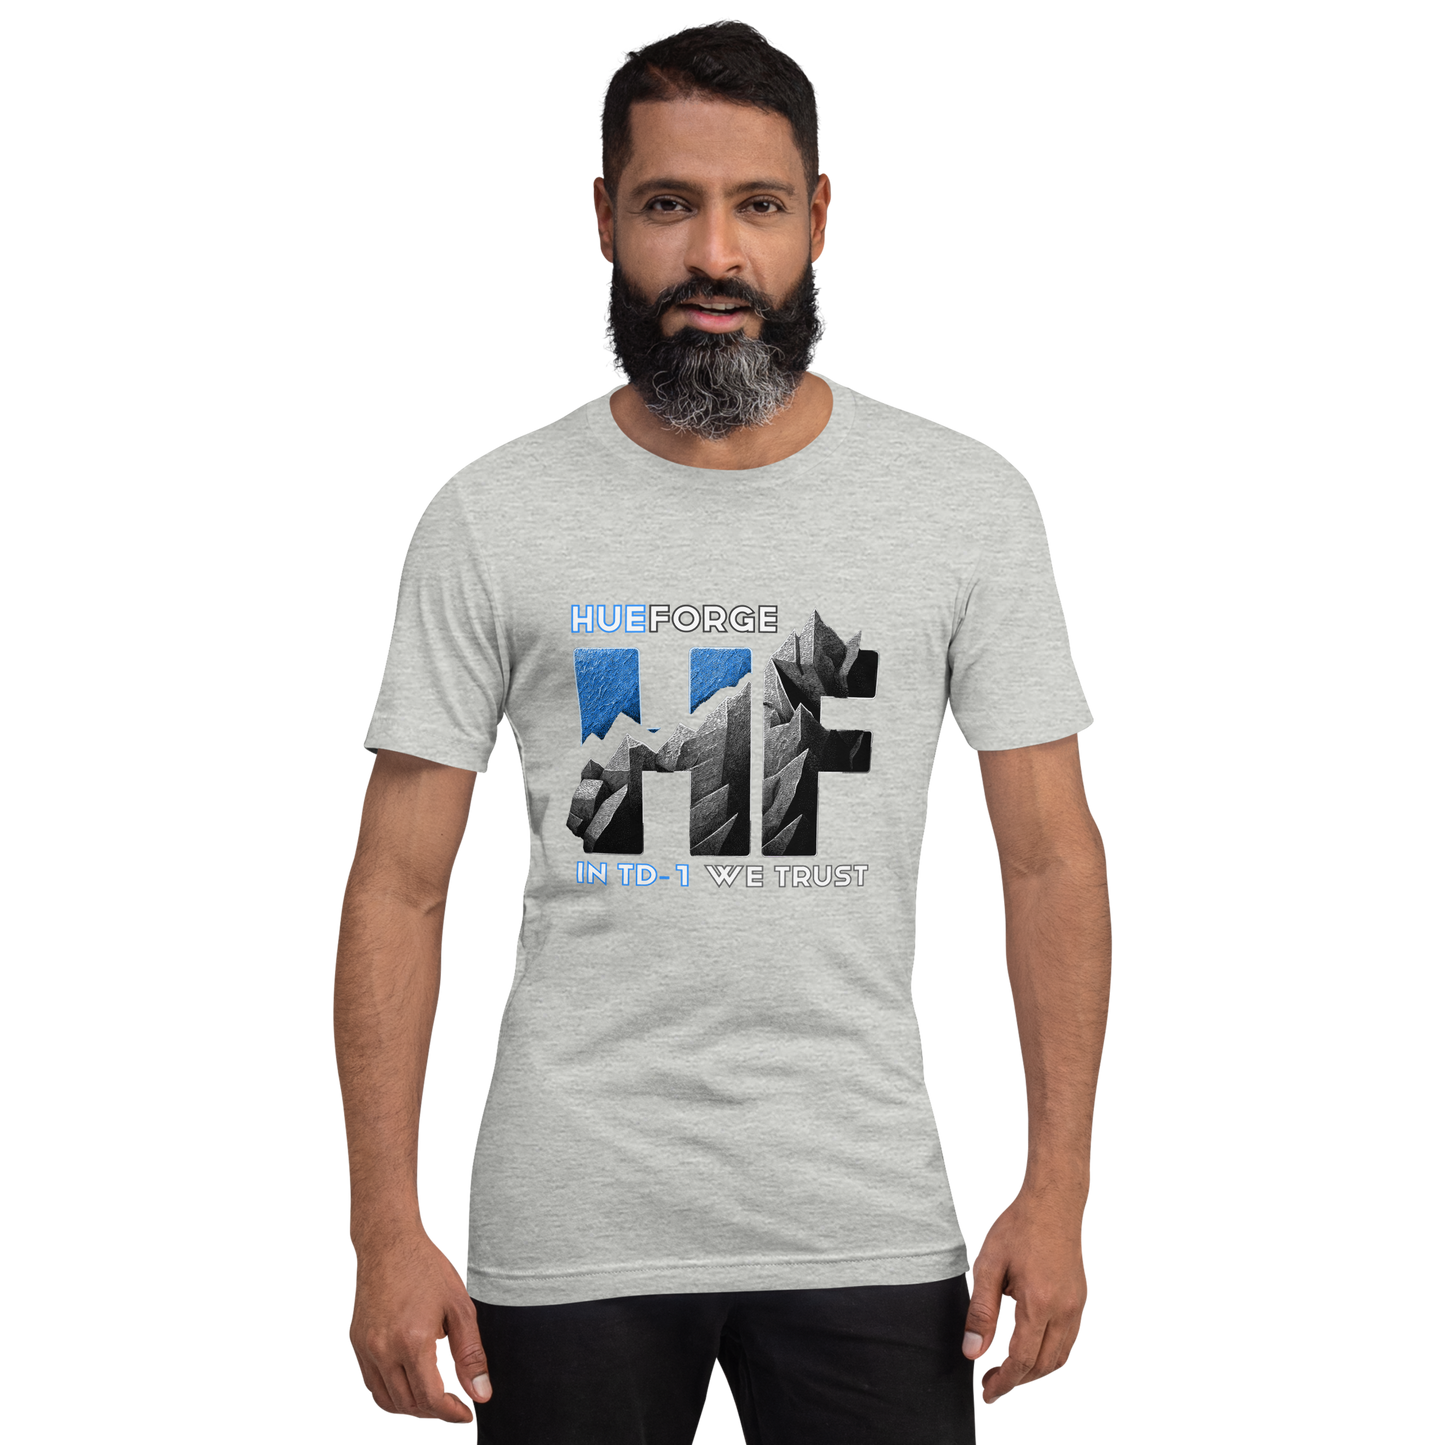 HueForge RMRRF T-Shirt